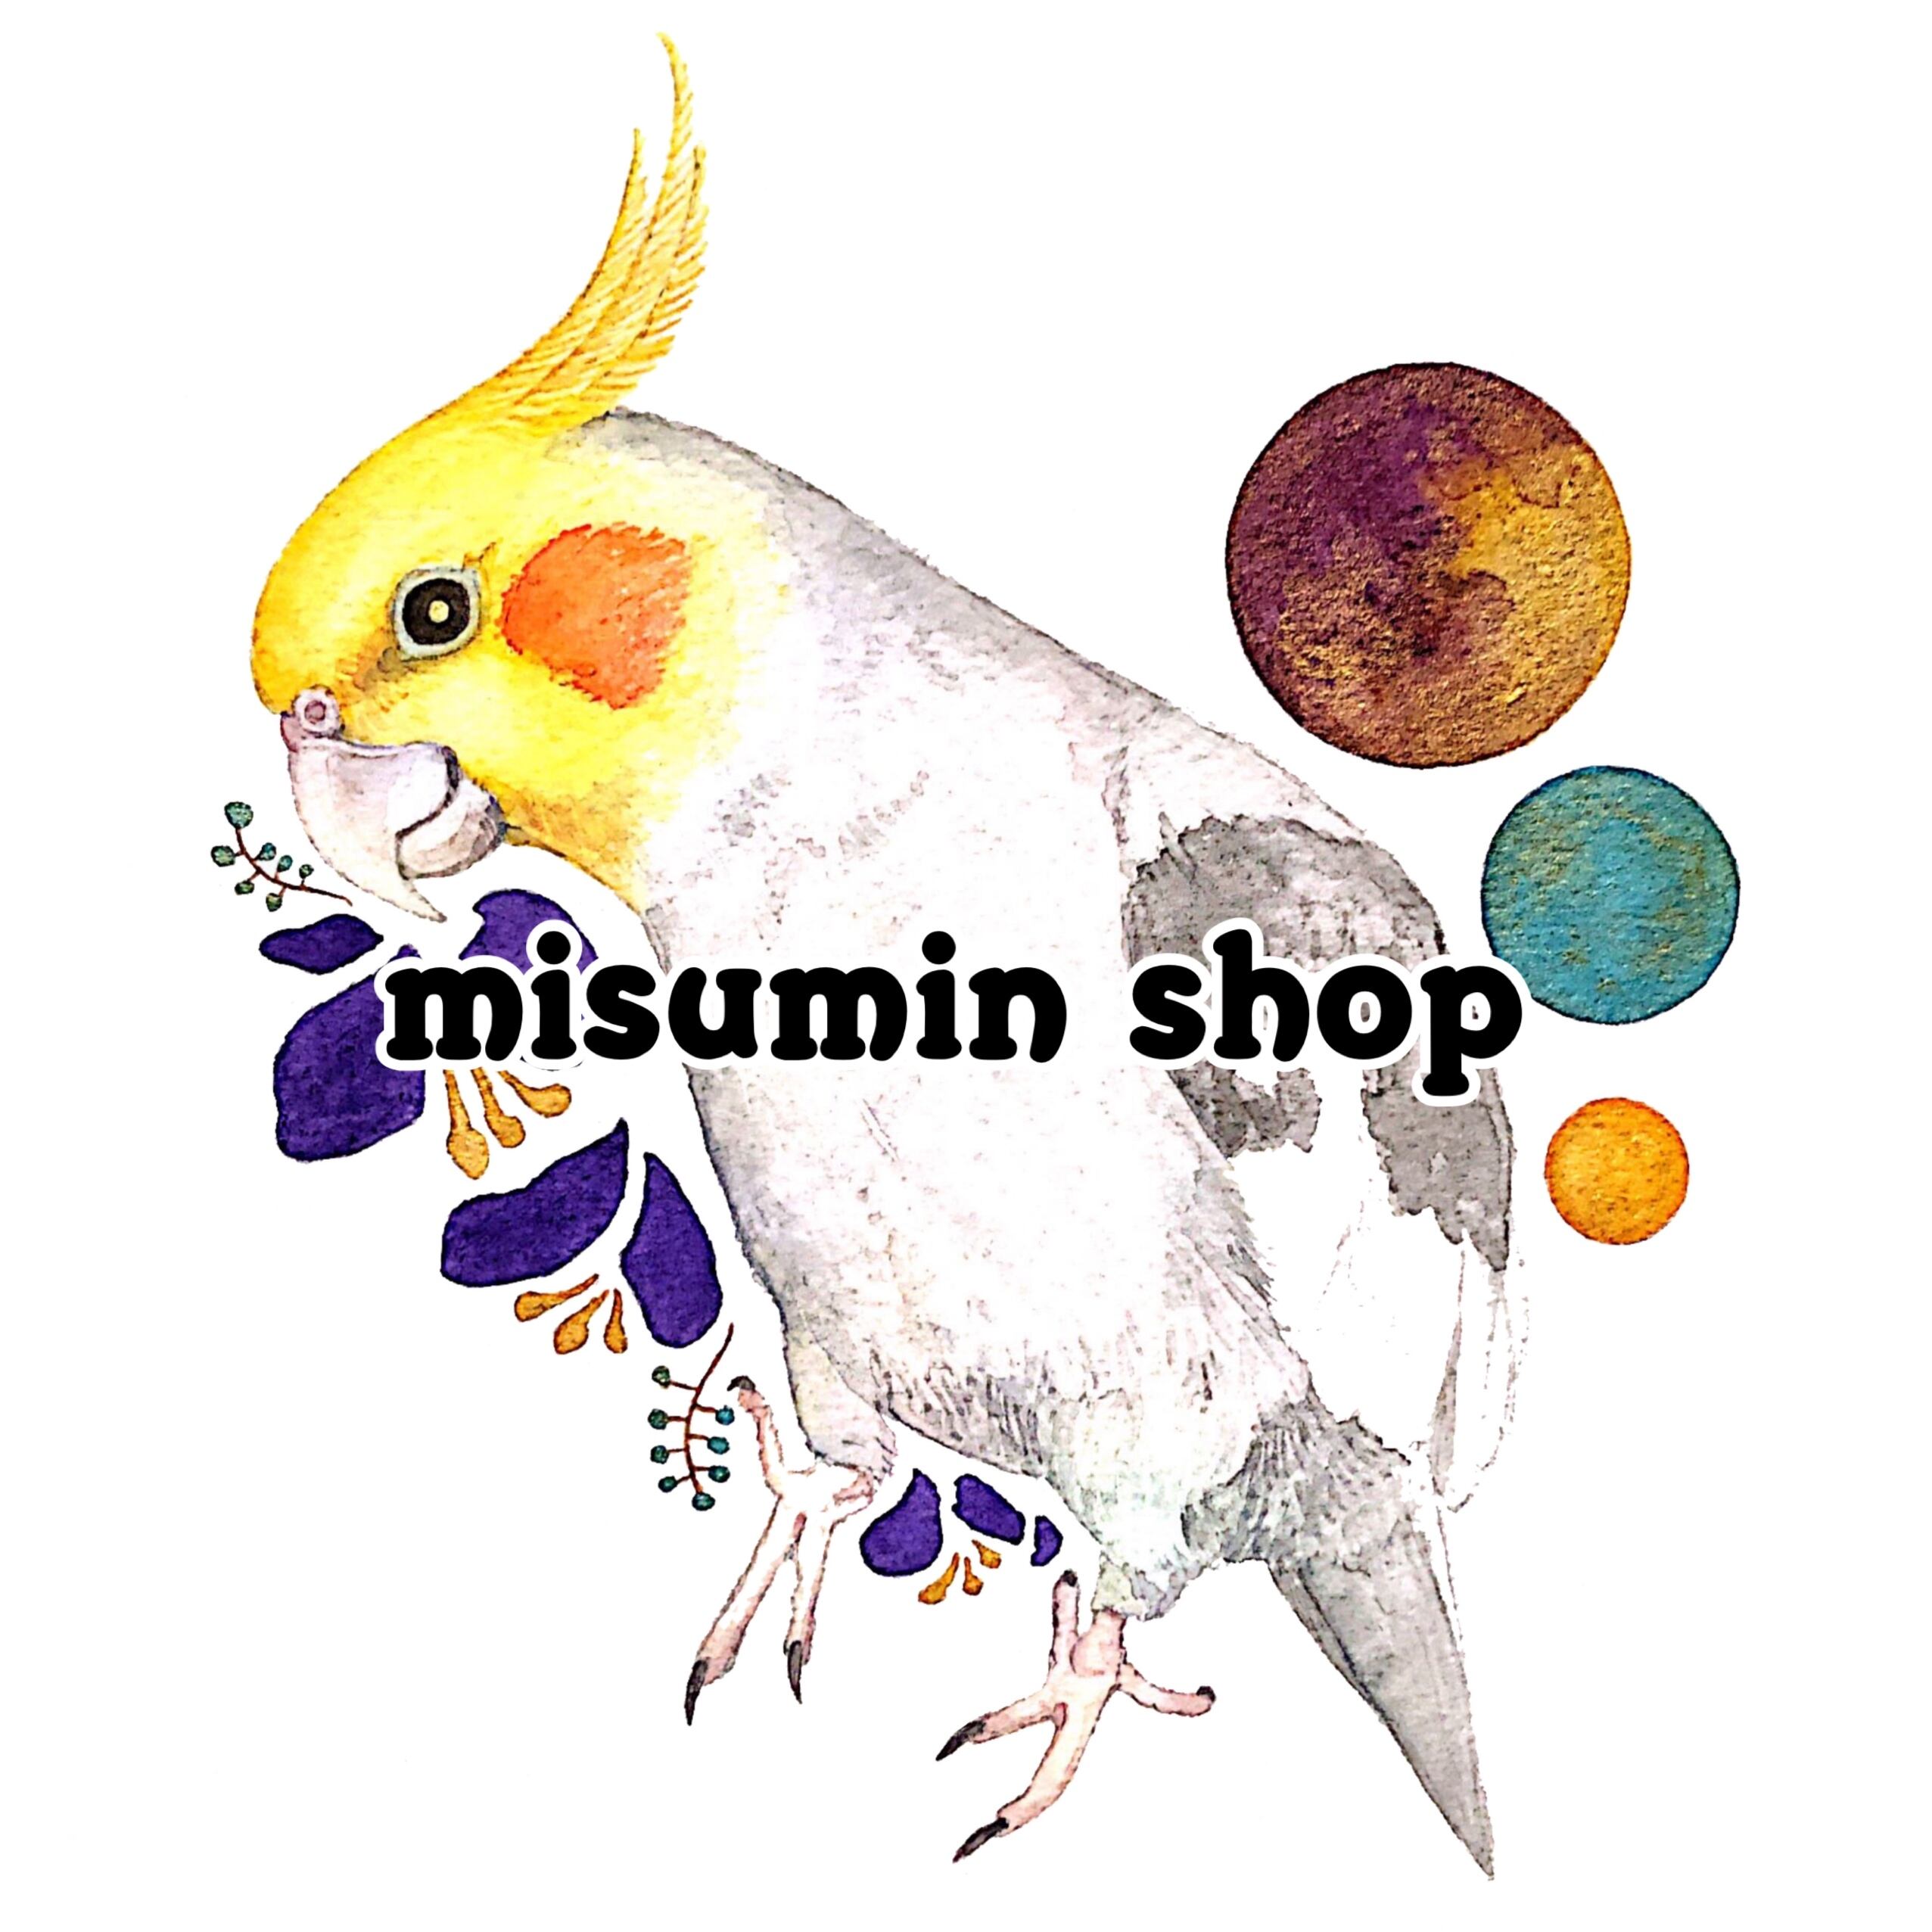 misumin shop